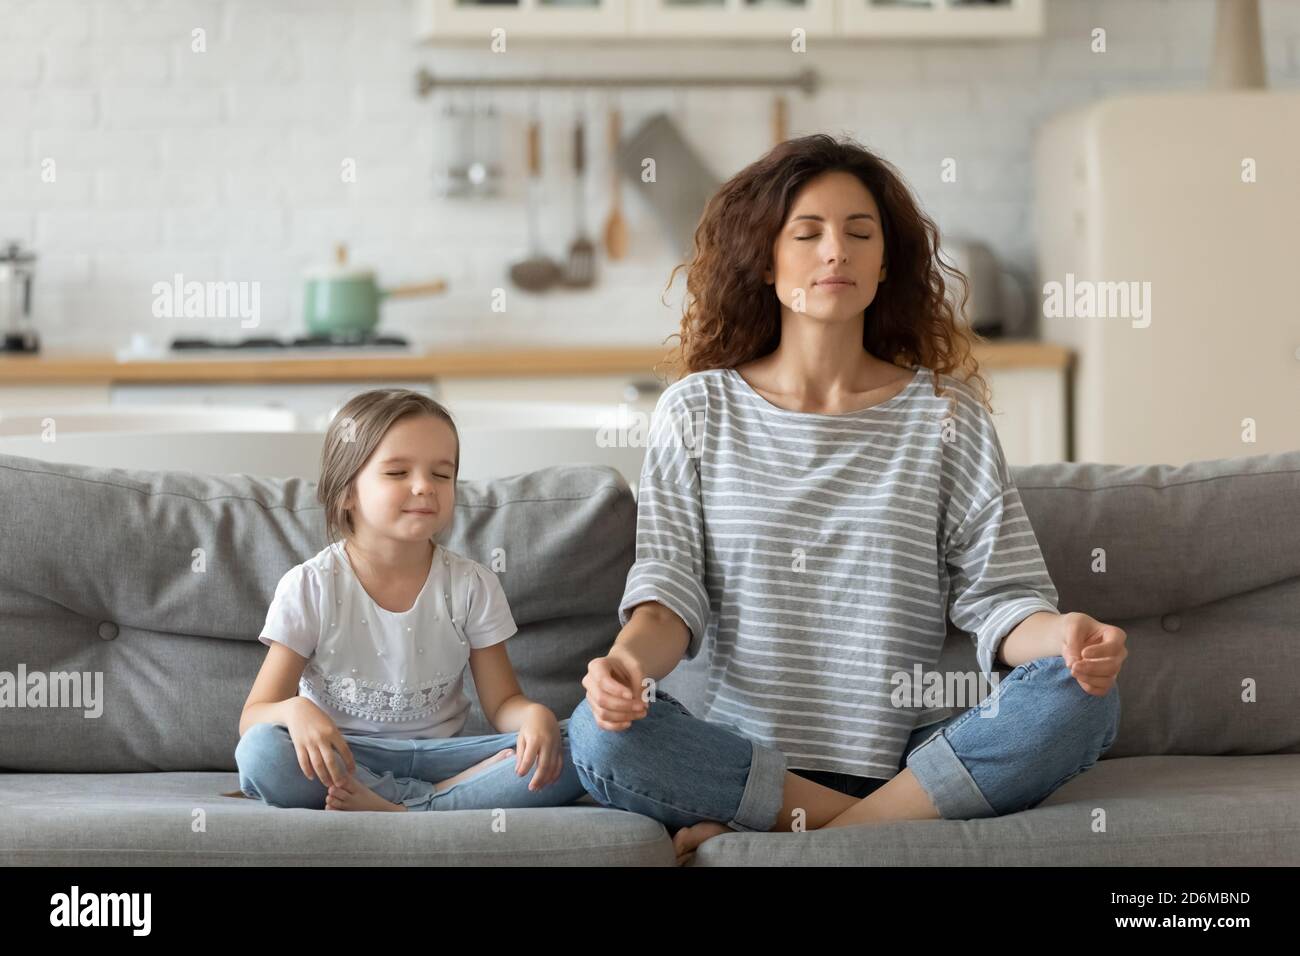 Paisible jeune mère et petite fille méditant, faisant de l'exercice de yoga Banque D'Images